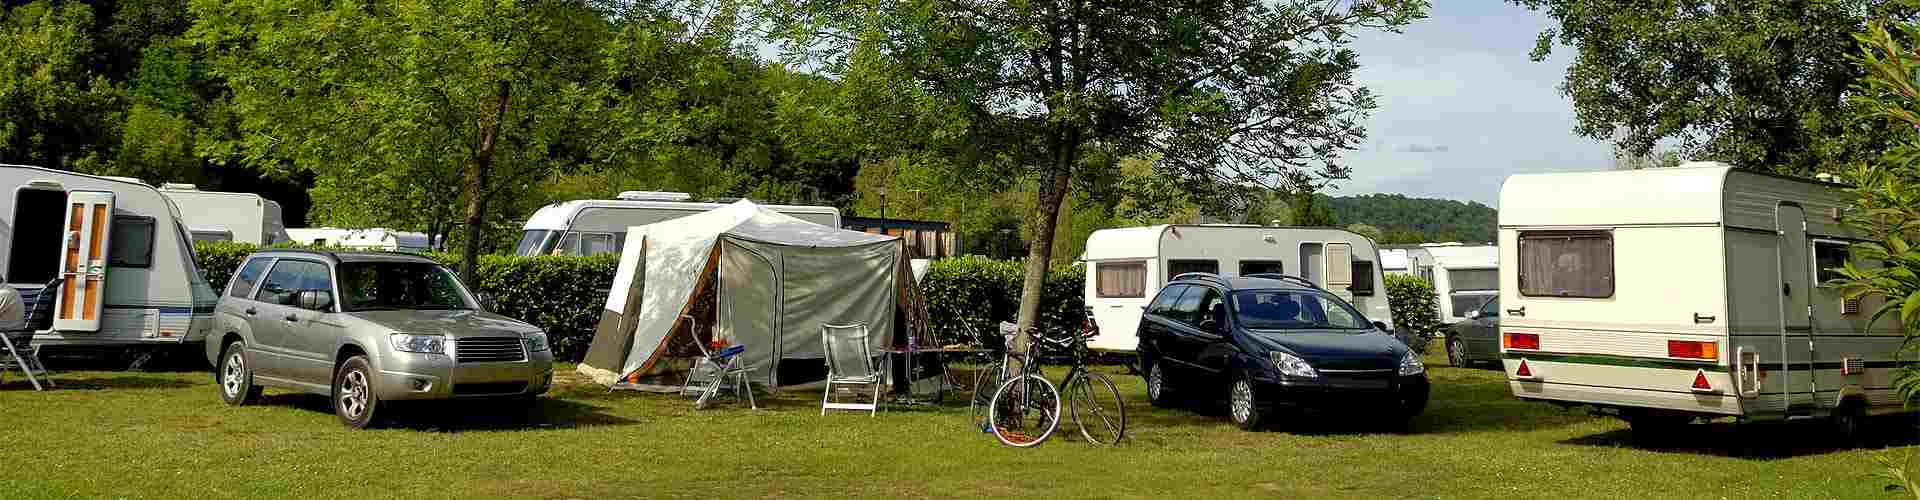 Campings y bungalows en Montesclado